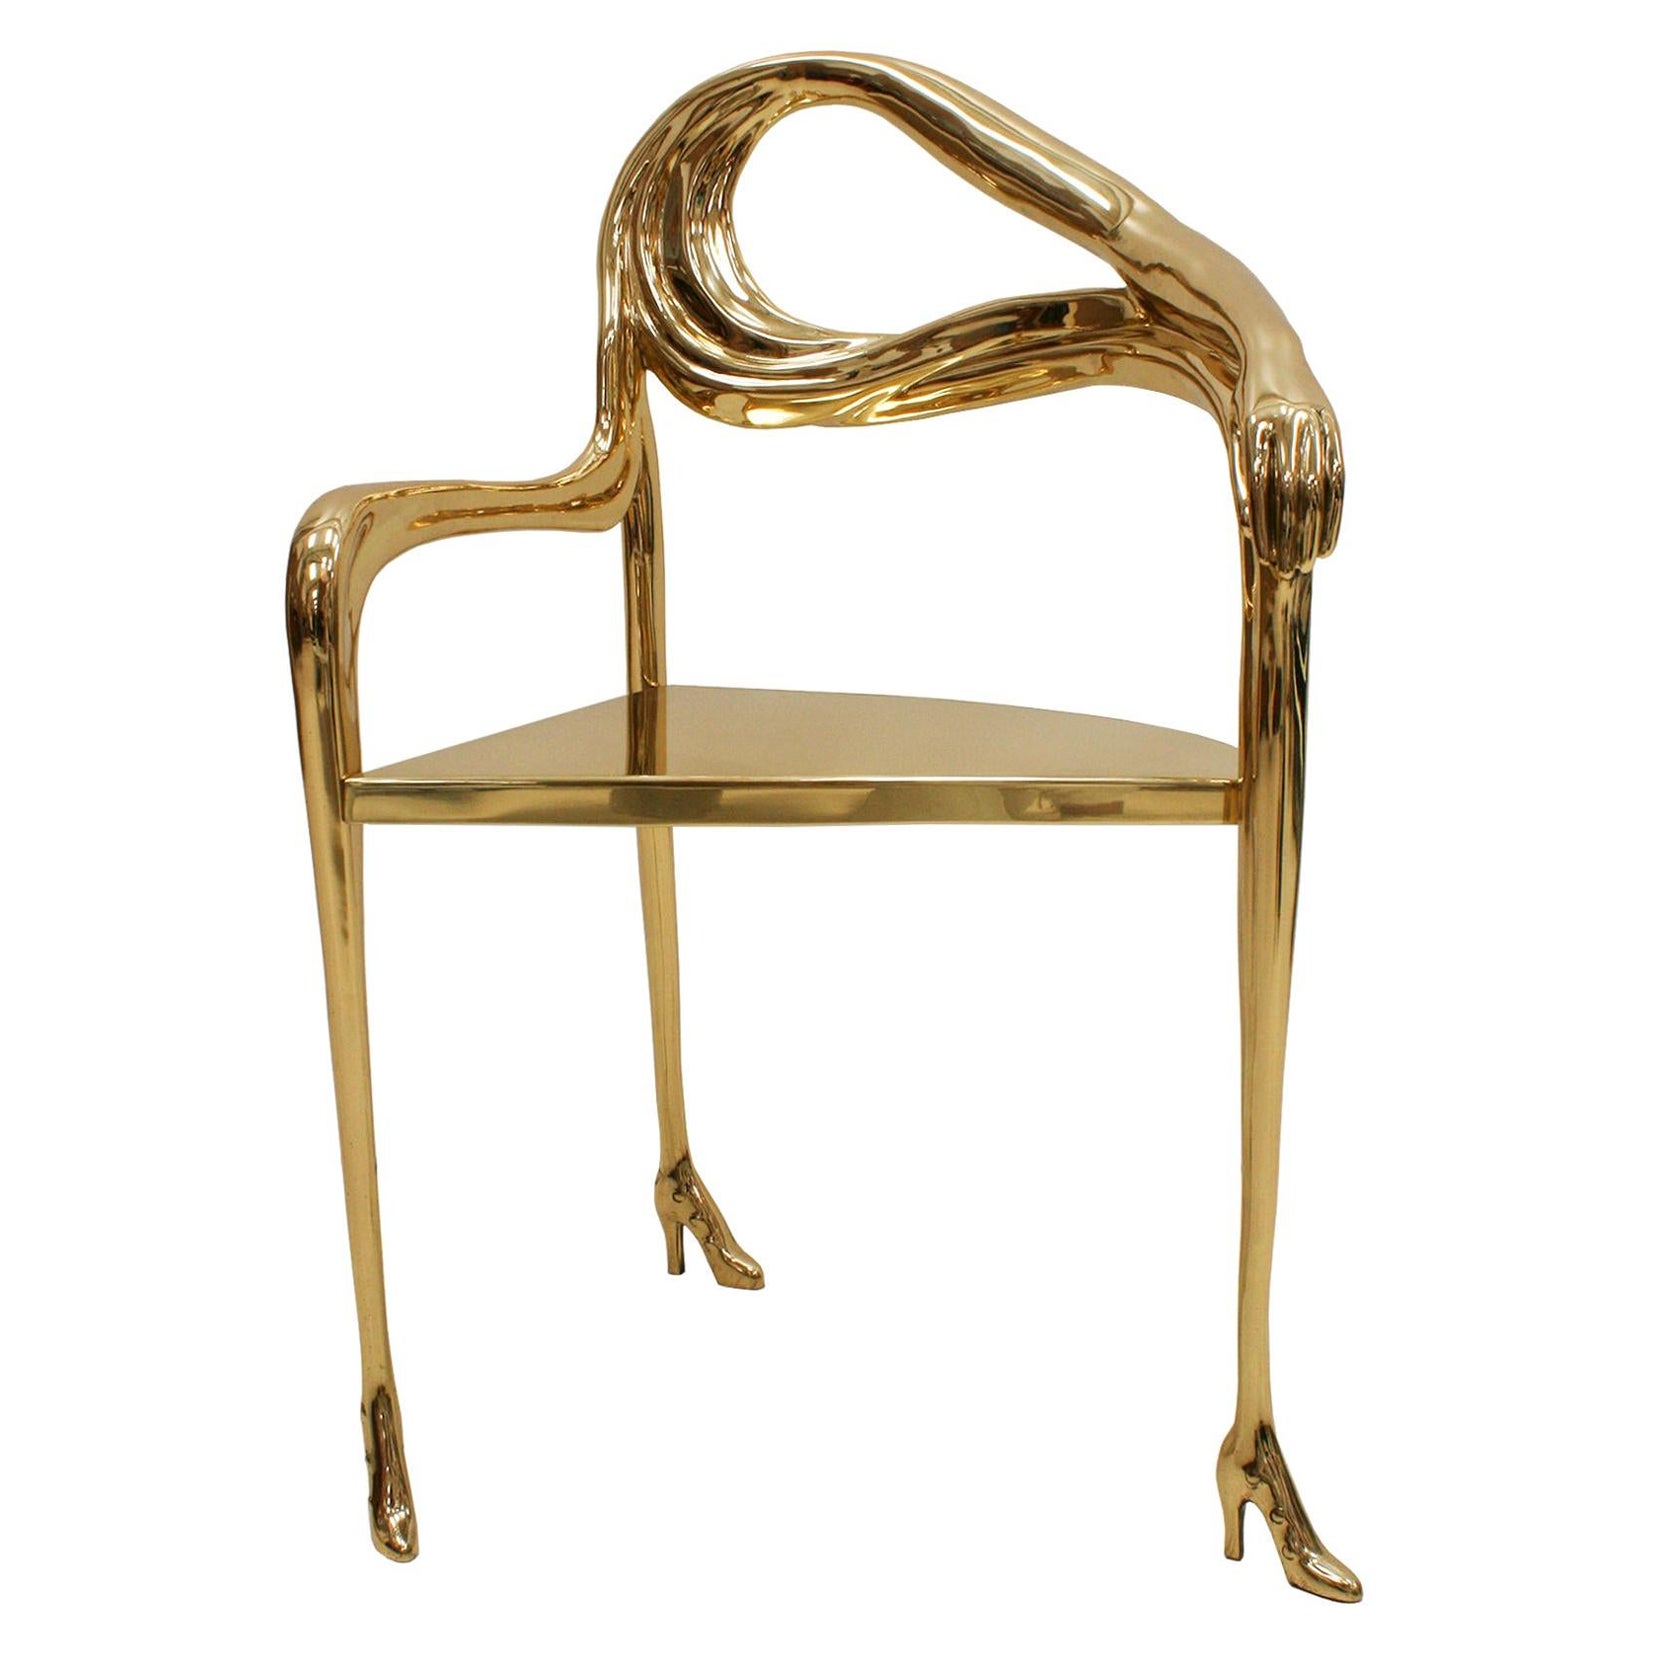 Salvador Dalí "Leda" Sculptural Chair from “Femme à tête de roses” Painting  For Sale at 1stDibs